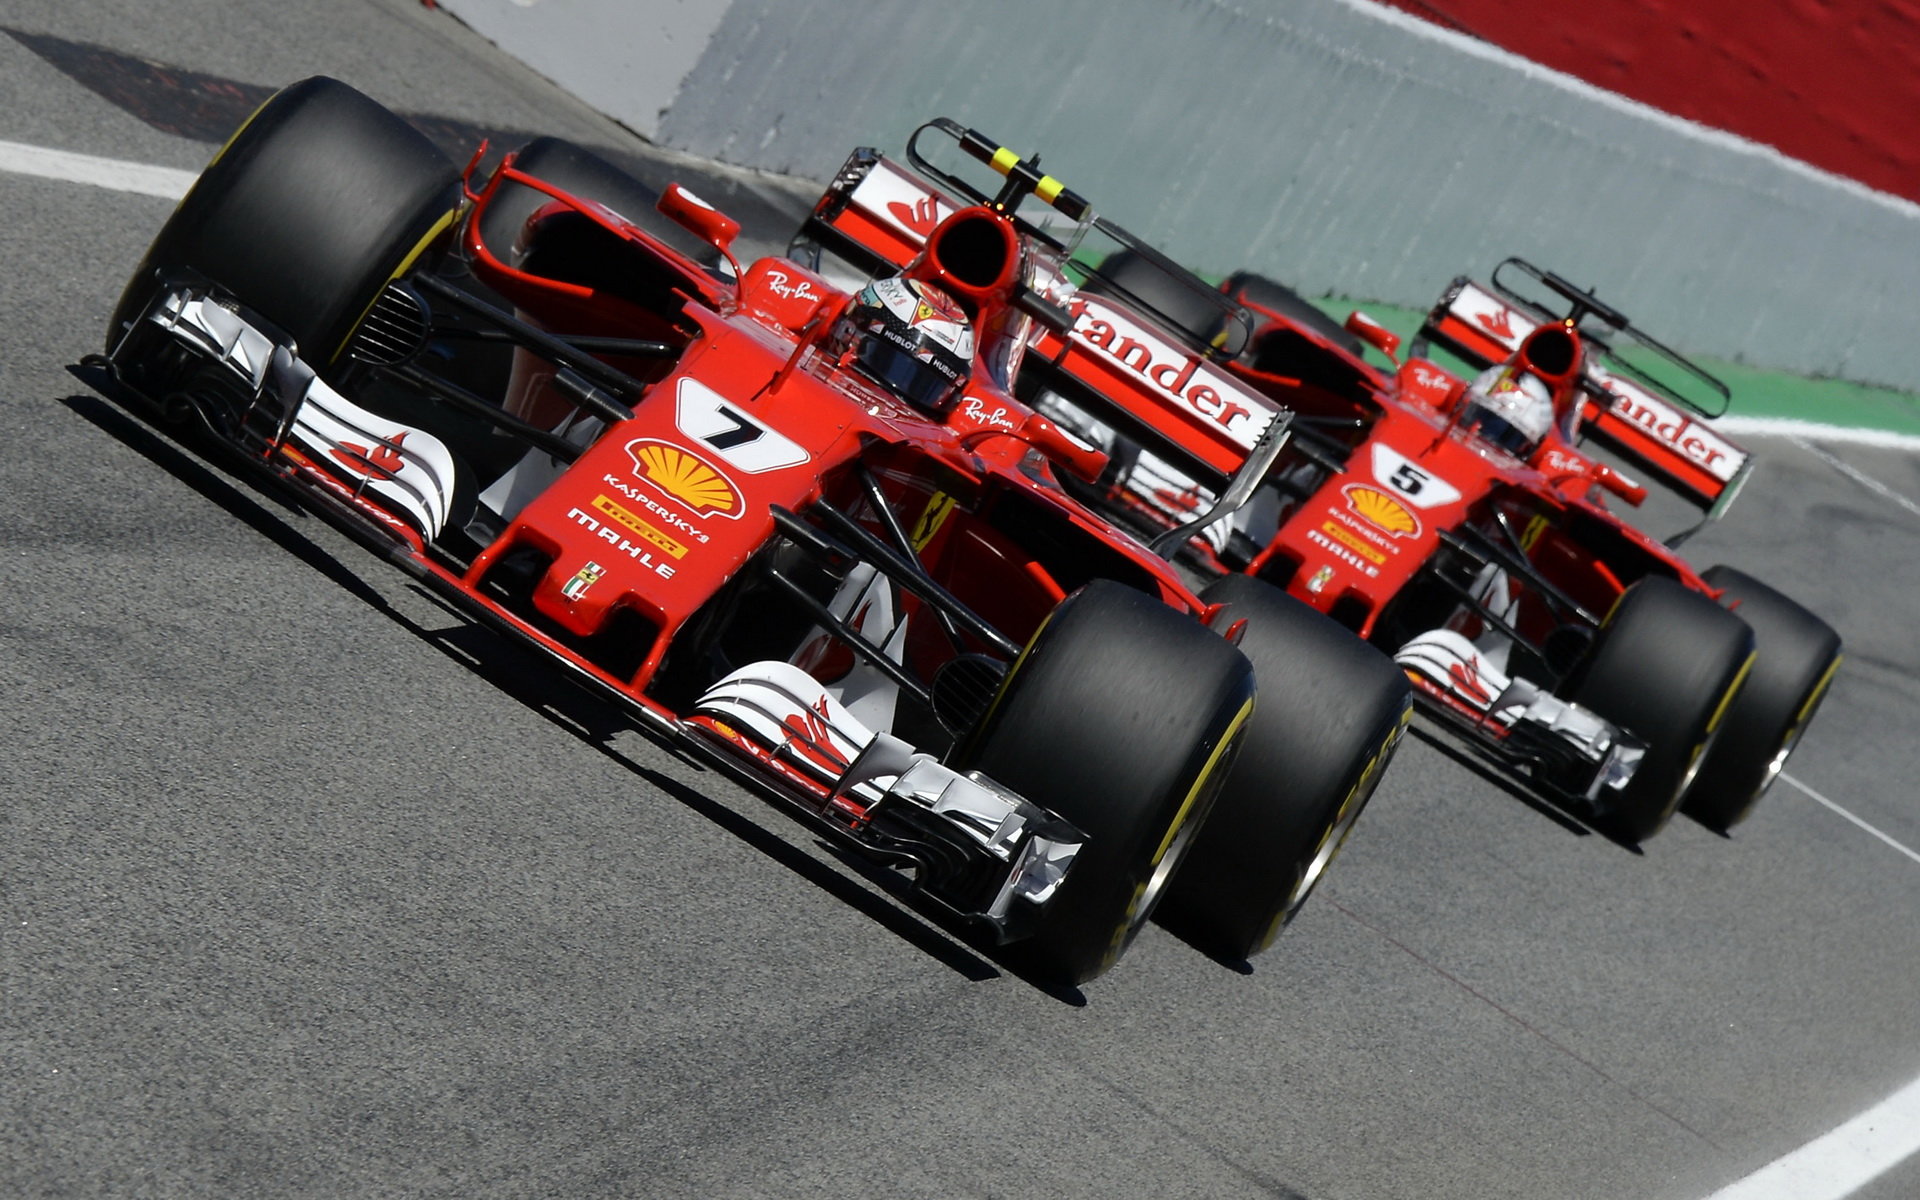 Kimi Räikkönen a Sebastian Vettel měli oba problém s pneumatikami, avšak šlo o jinou příčinu